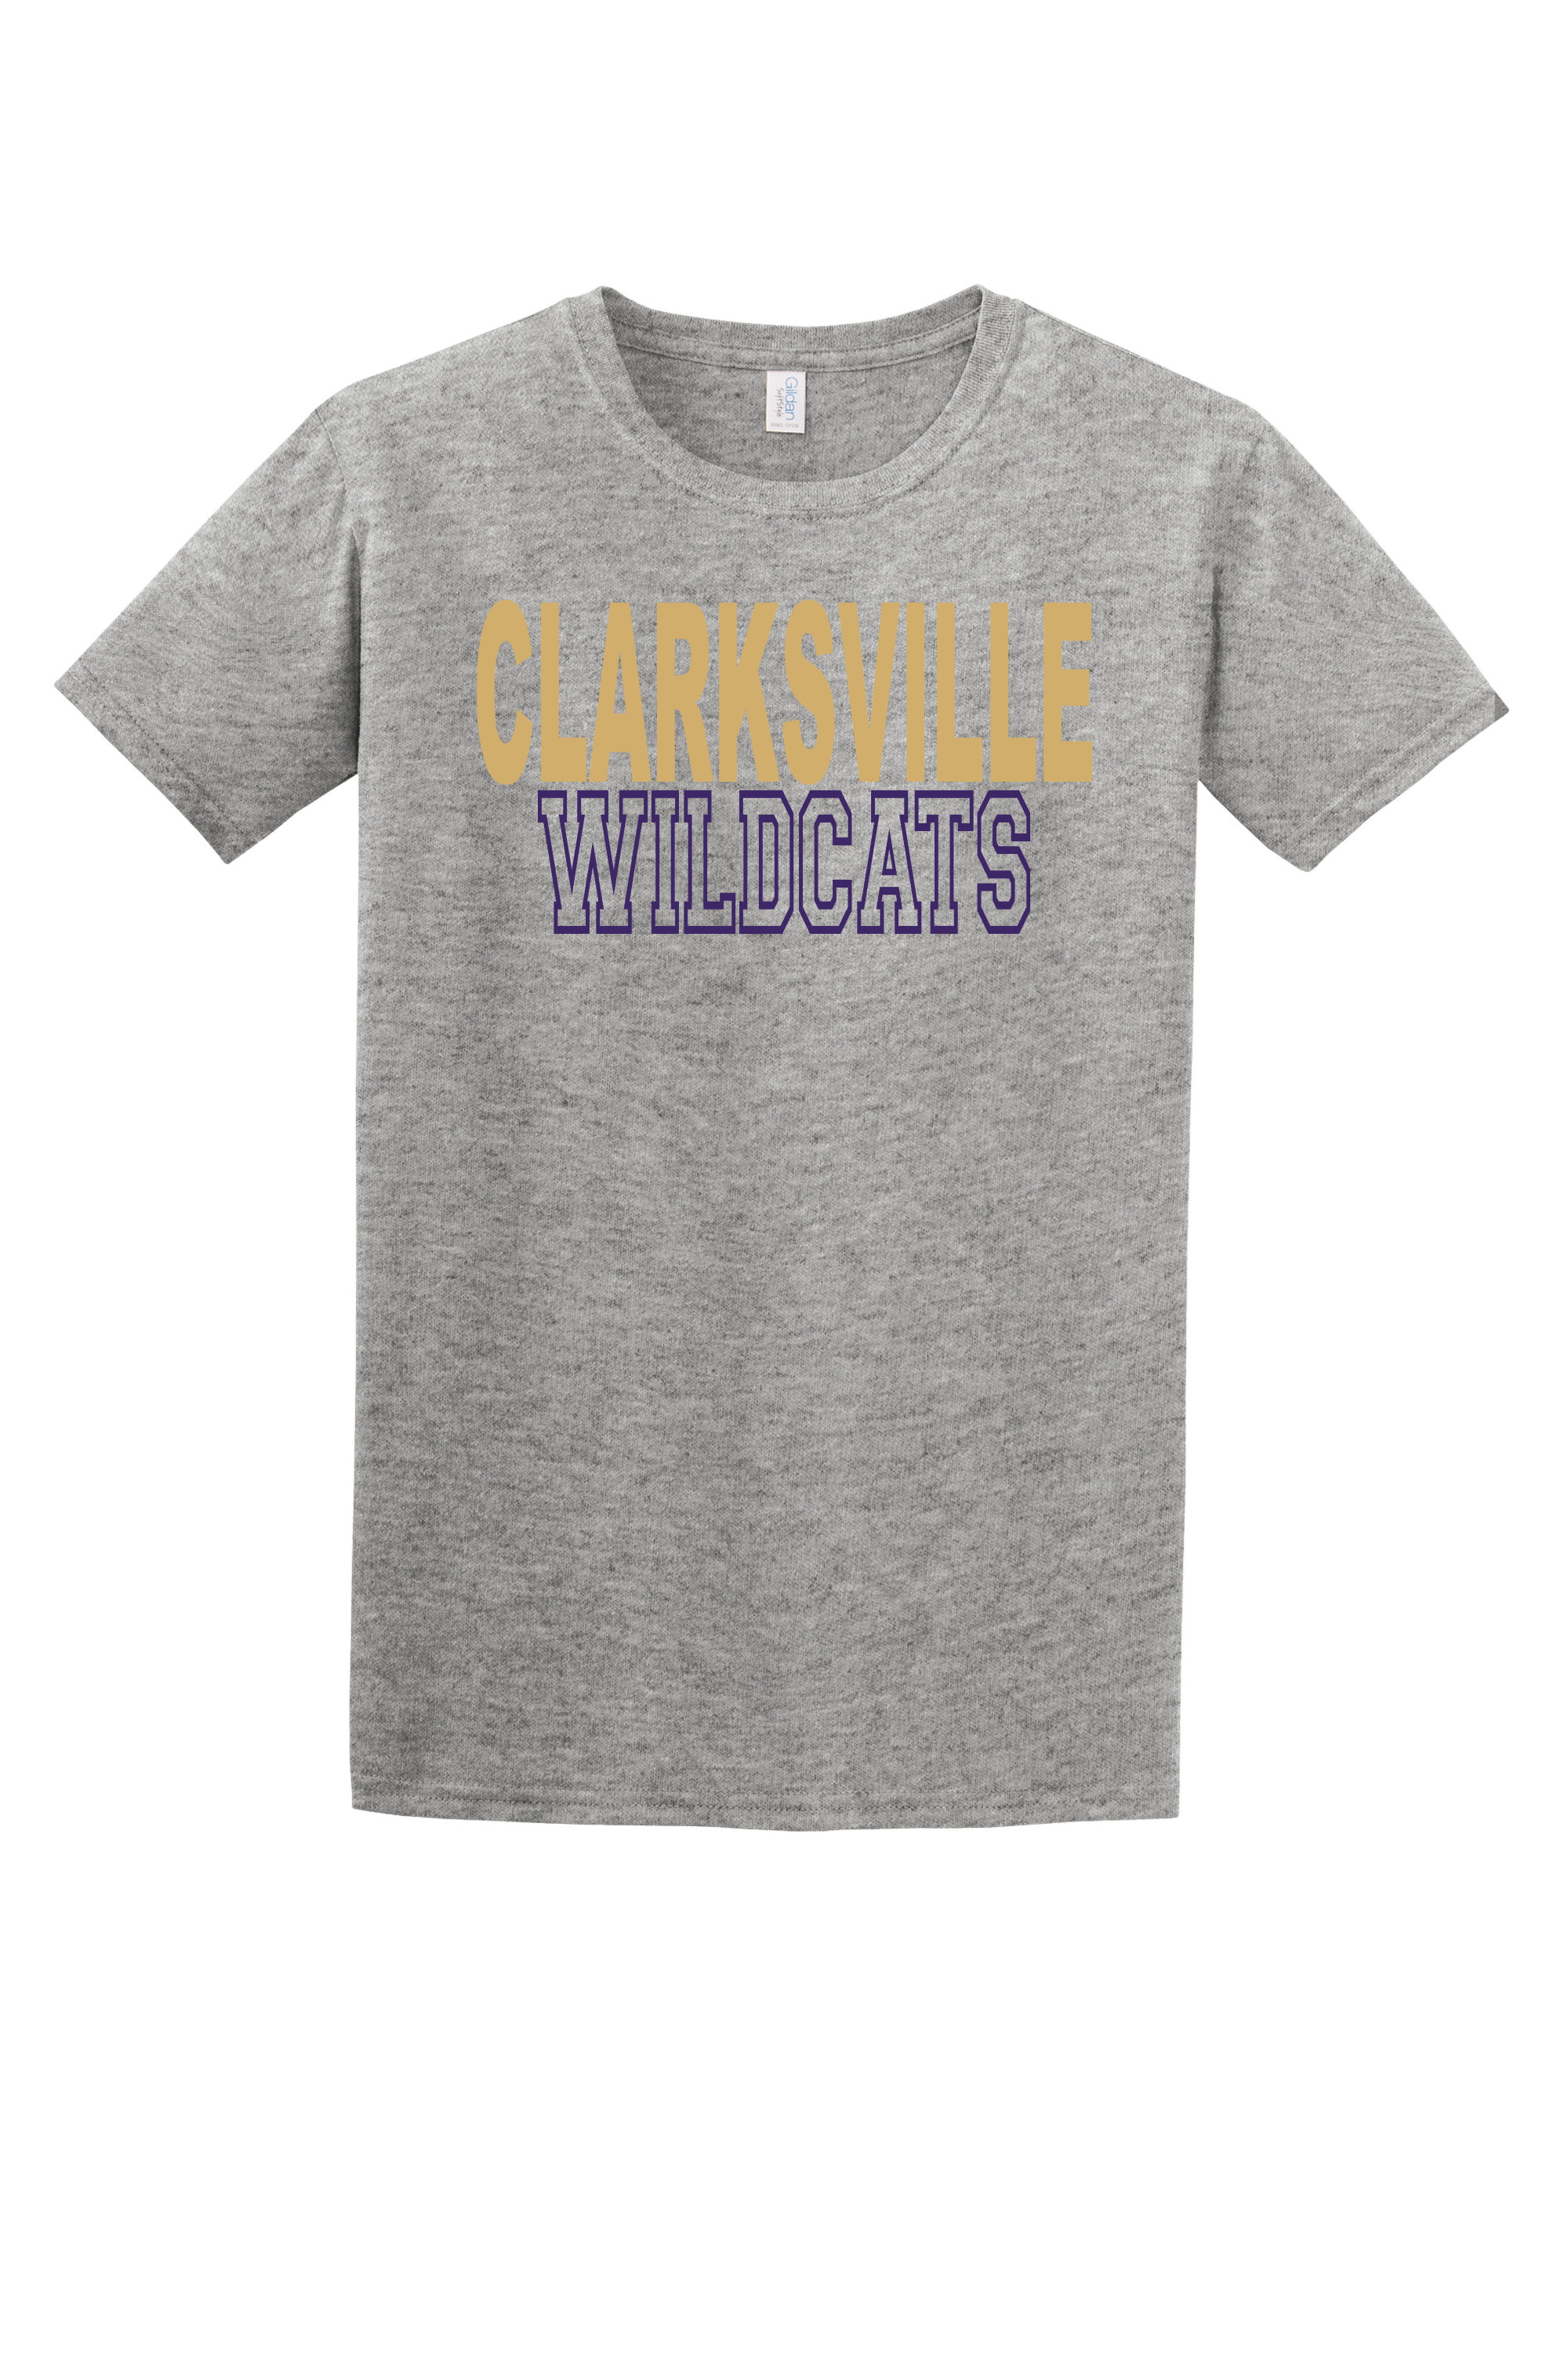 Clarksville Wildcats Tee (Block)